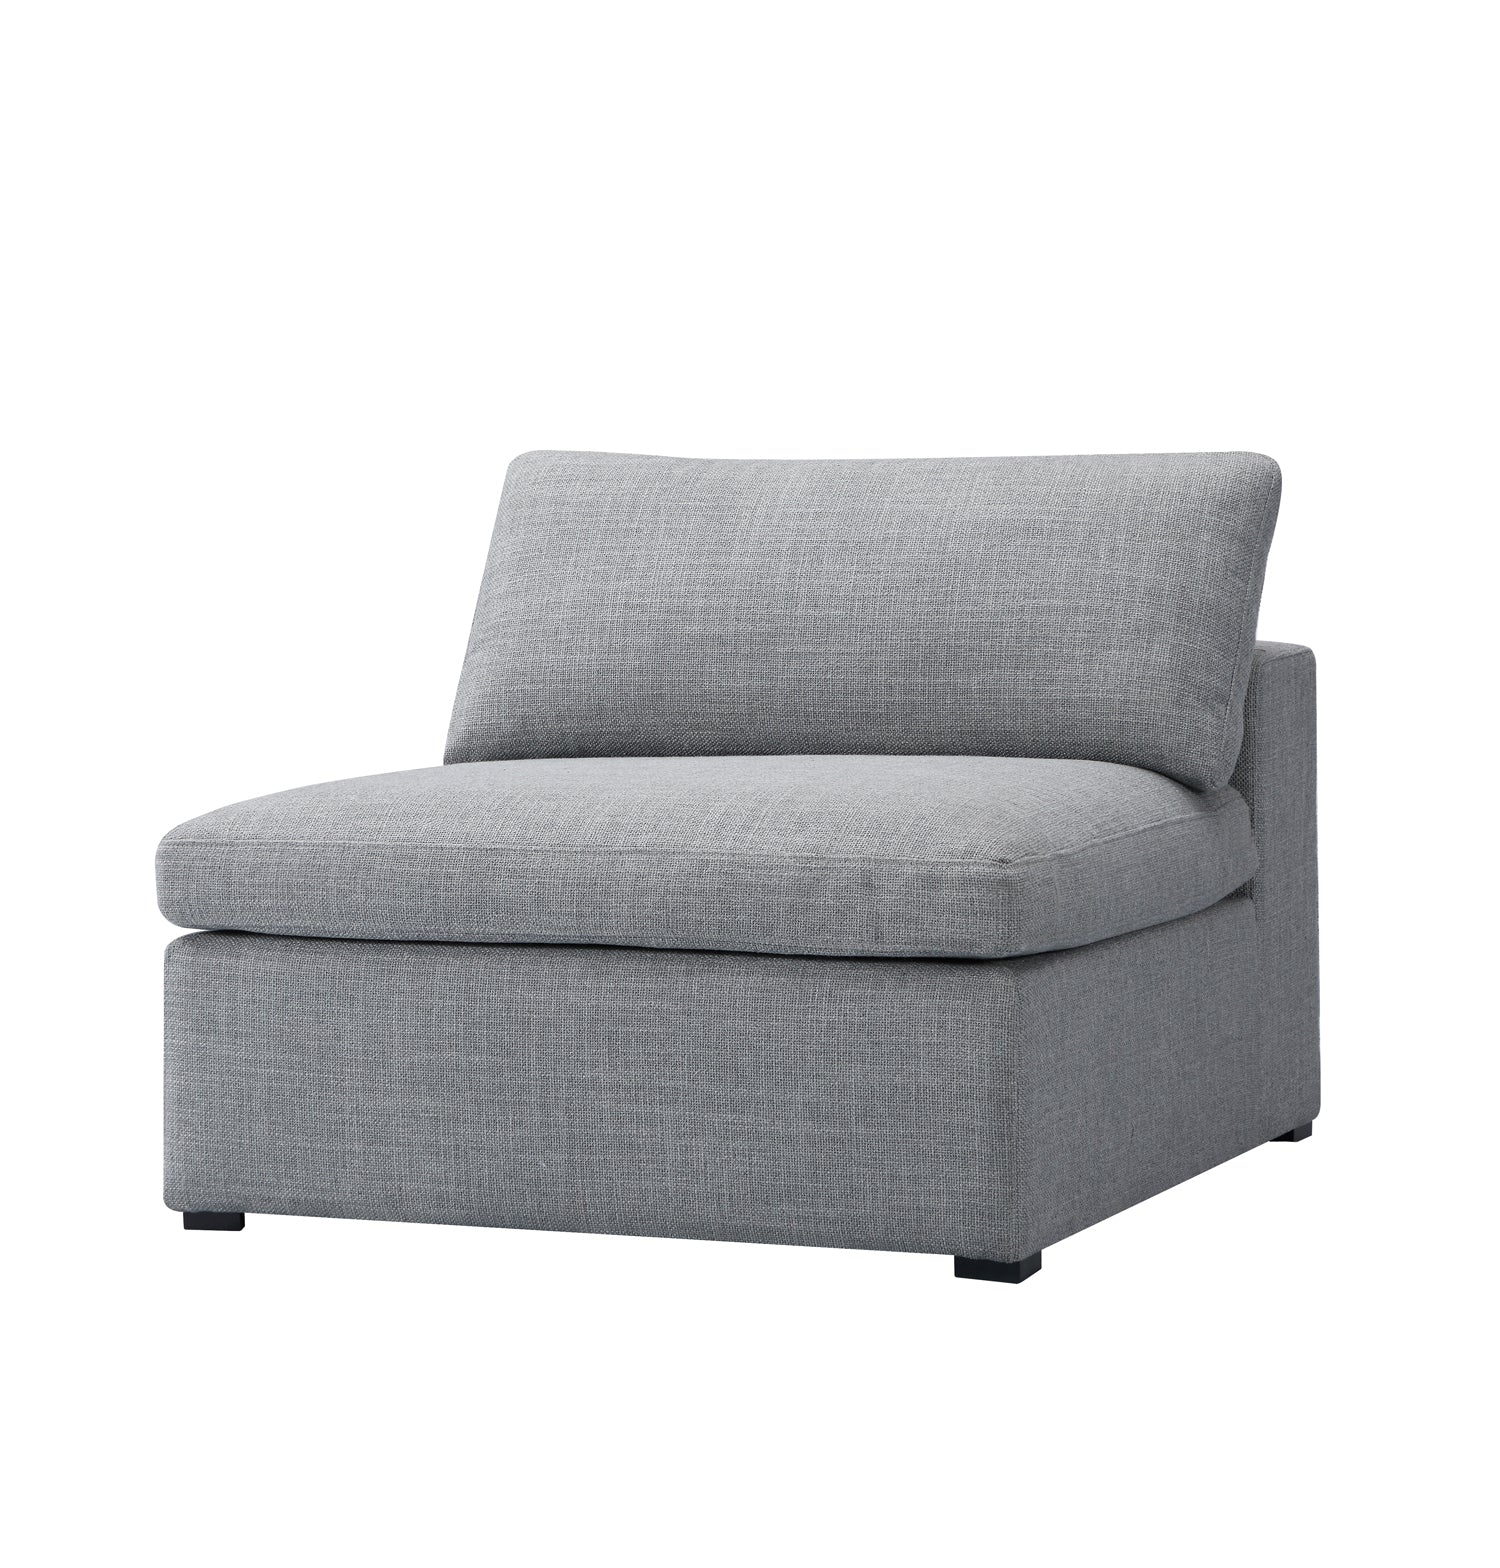 Inès Sofa - 1-Seater Single Module - Grey Fabric